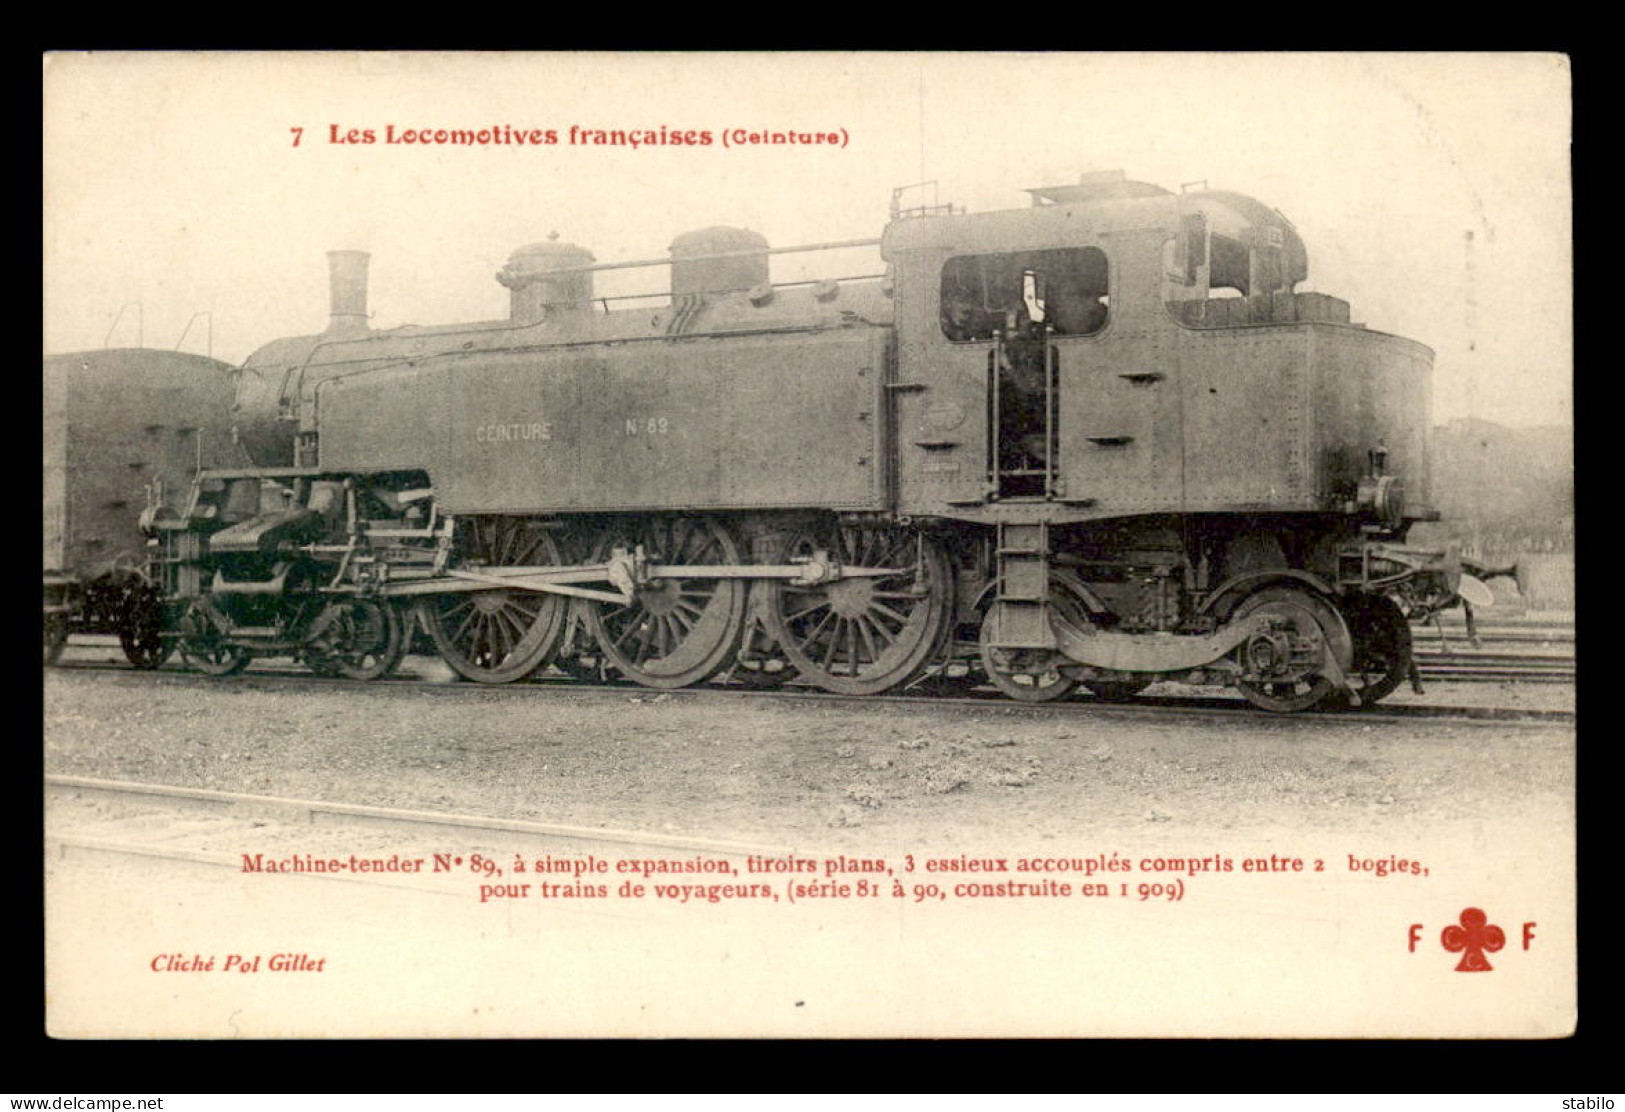 75 - PARIS - "LES LOCOMOTIVES"COLLECTION F. FLEURY - LOCOMOTIVE N°81 DU CHEMIN DE FER DE CEINTURE - Métro Parisien, Gares